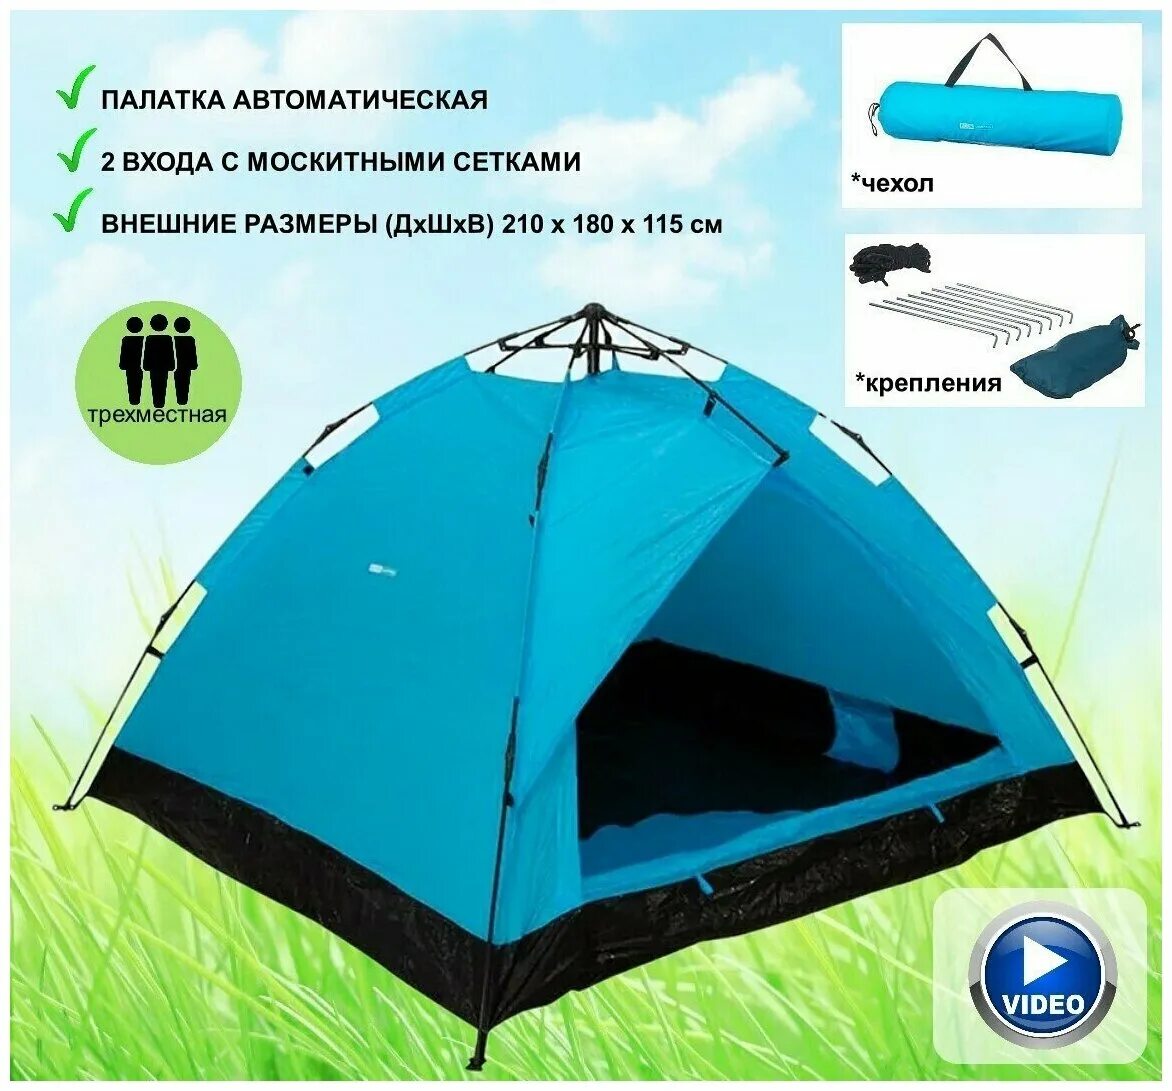 Ecos camping. Палатка трекинговая трехместная Ecos. Автоматическая палатка Ecos Breeze. Палатка Ecos Camping. Шатер Ecos Camping.